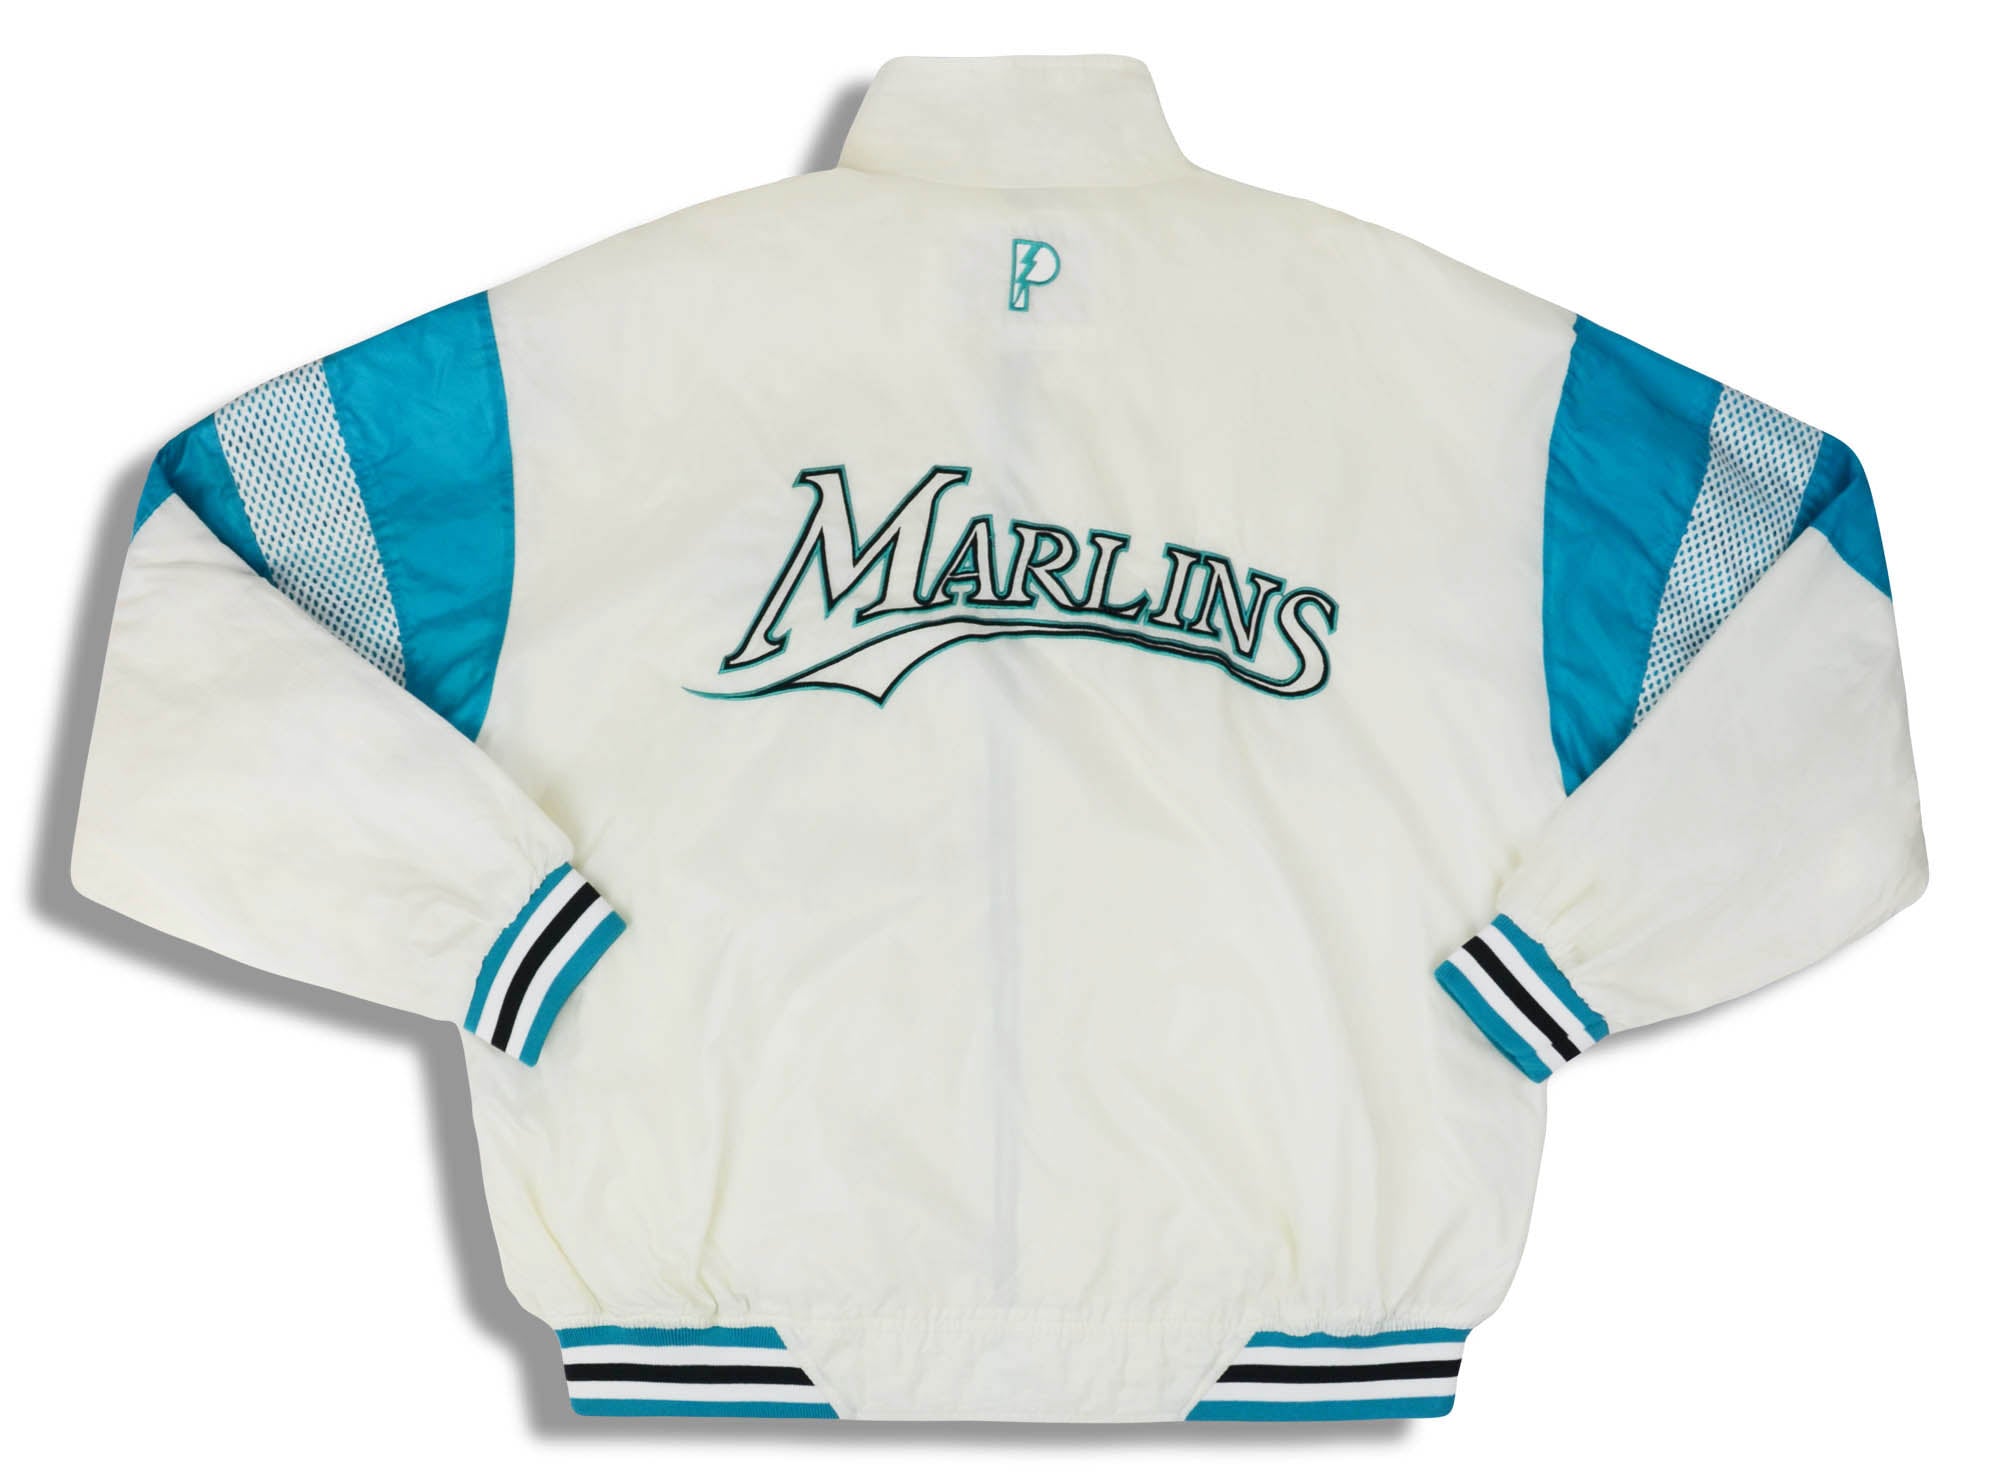 Vintage 90s Starter Texas Rangers Jacket XL Baseball